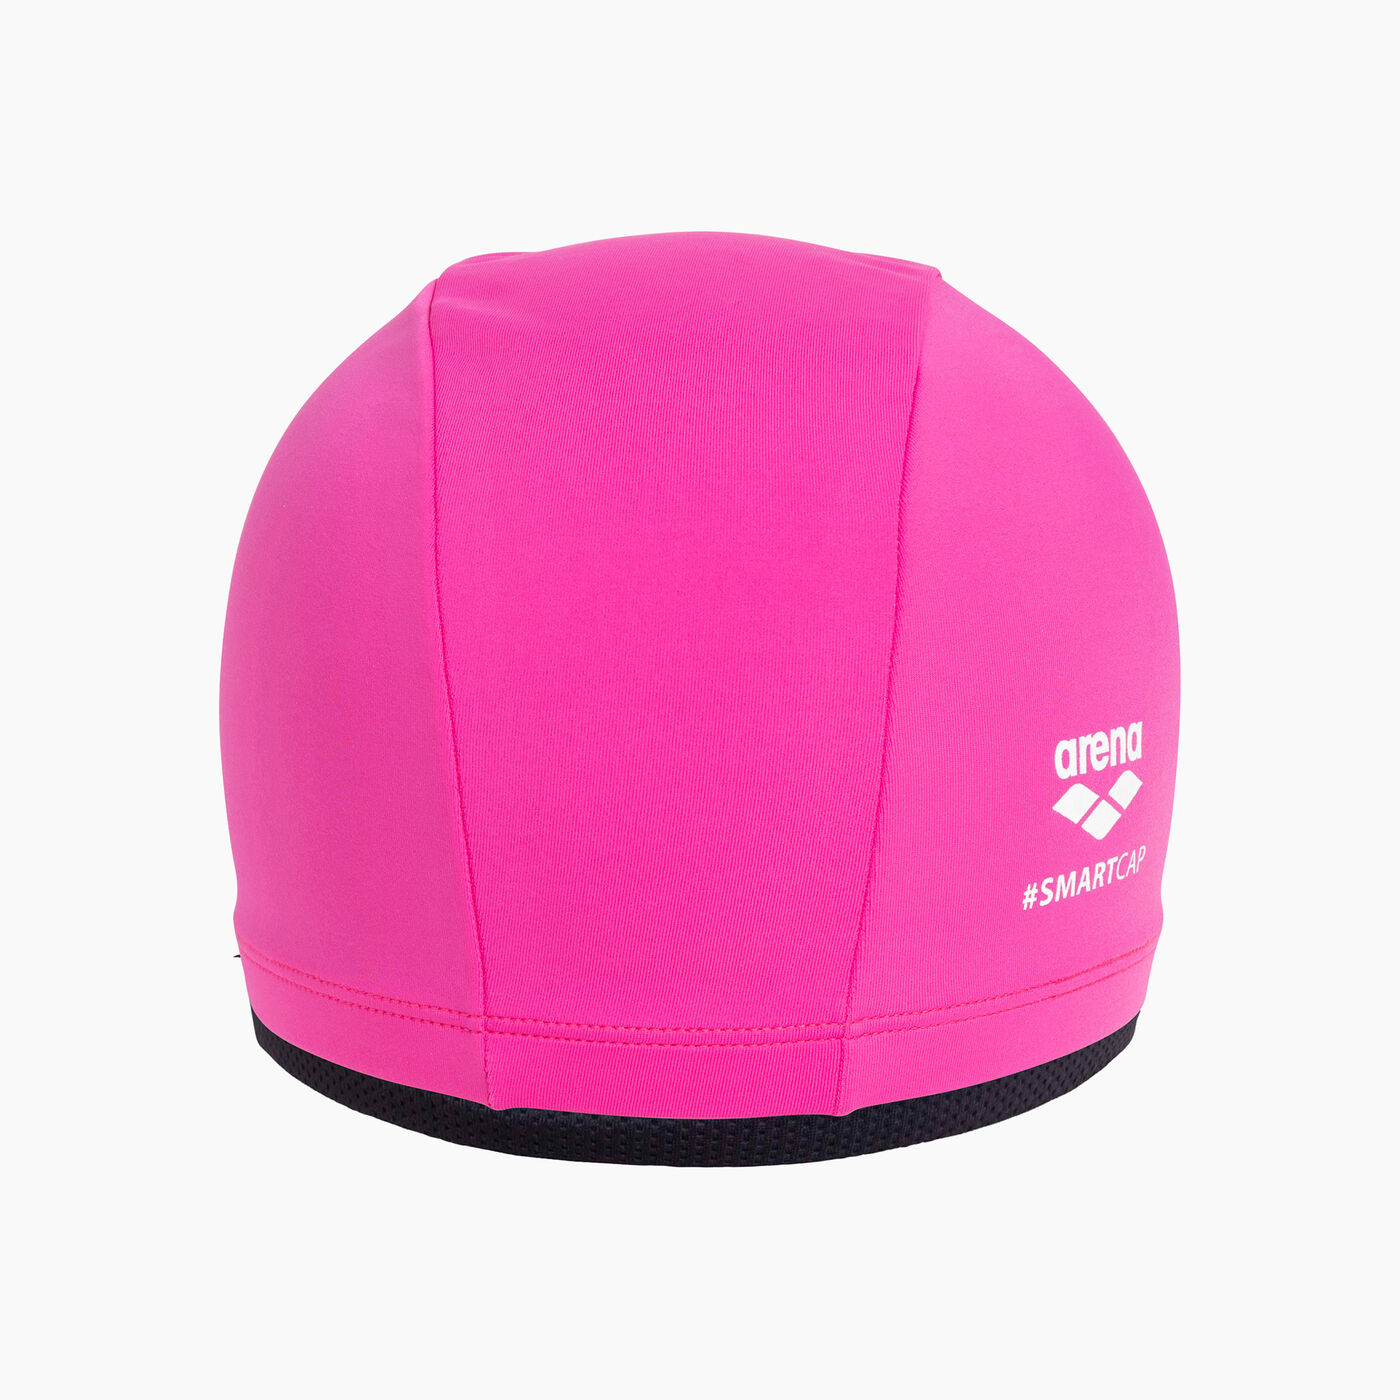 Women's Smartcap Swimming Cap